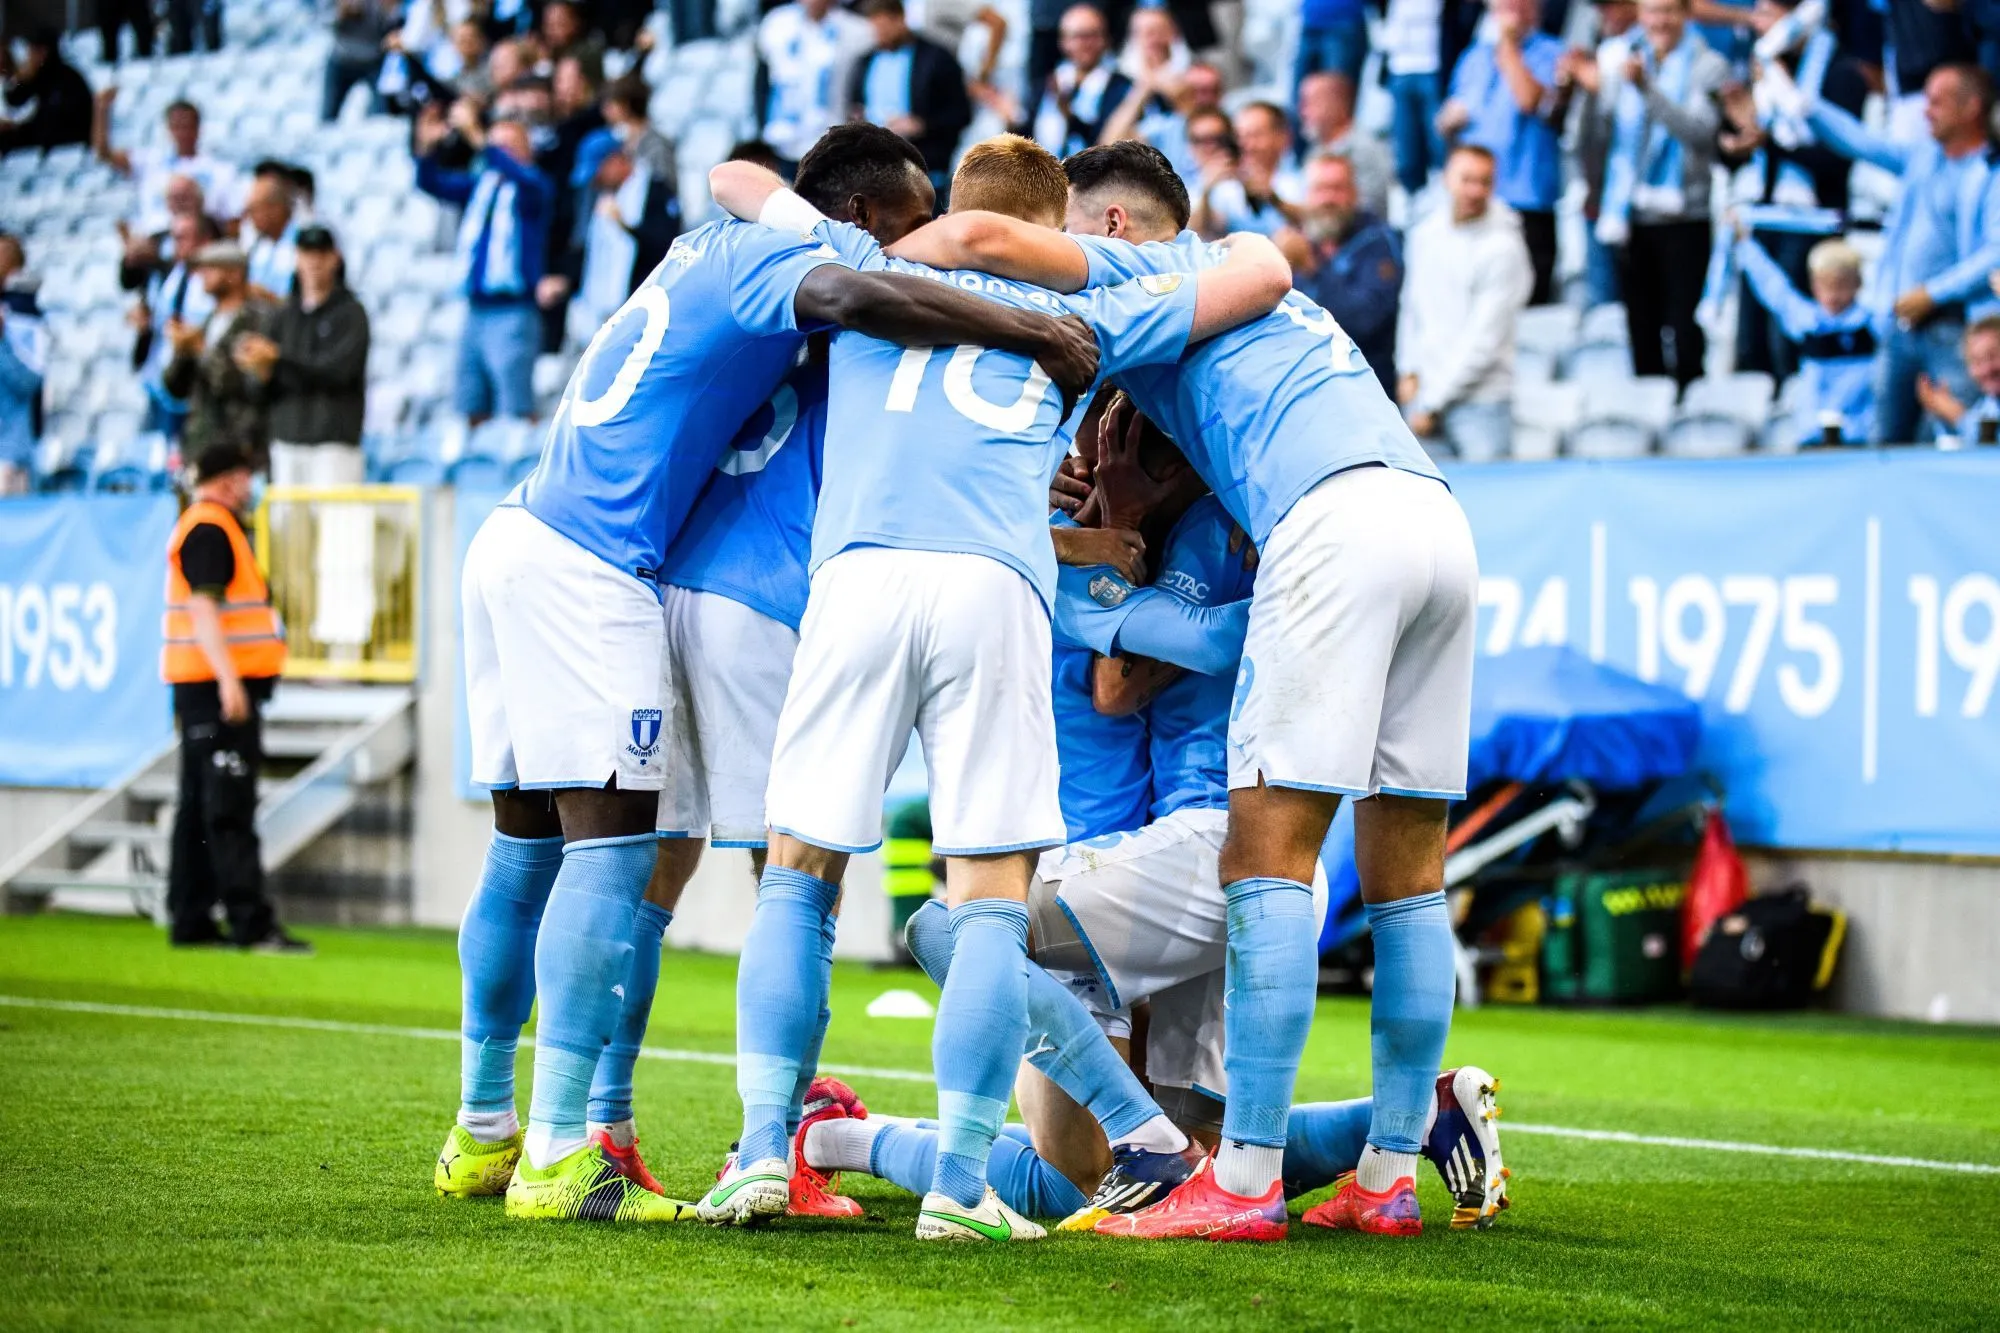 Pronostic Ludogorets Malmö : Analyse cote et pronostic du barrage retour de Ligue des champions